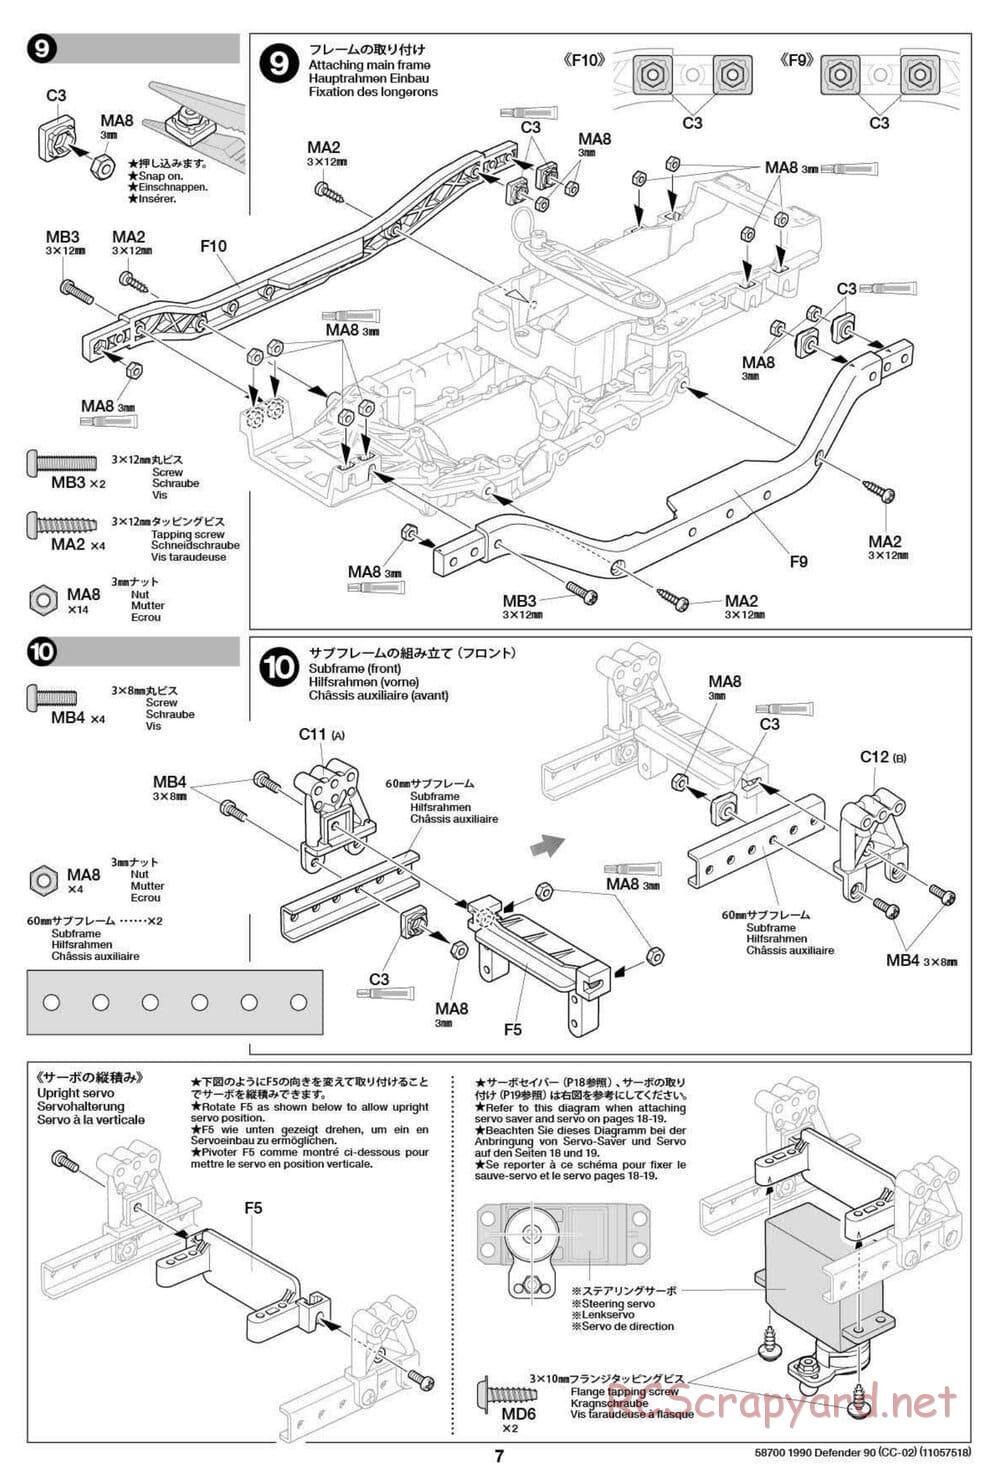 Tamiya - 1990 Land Rover Defender 90 - CC-02 Chassis - Manual - Page 7